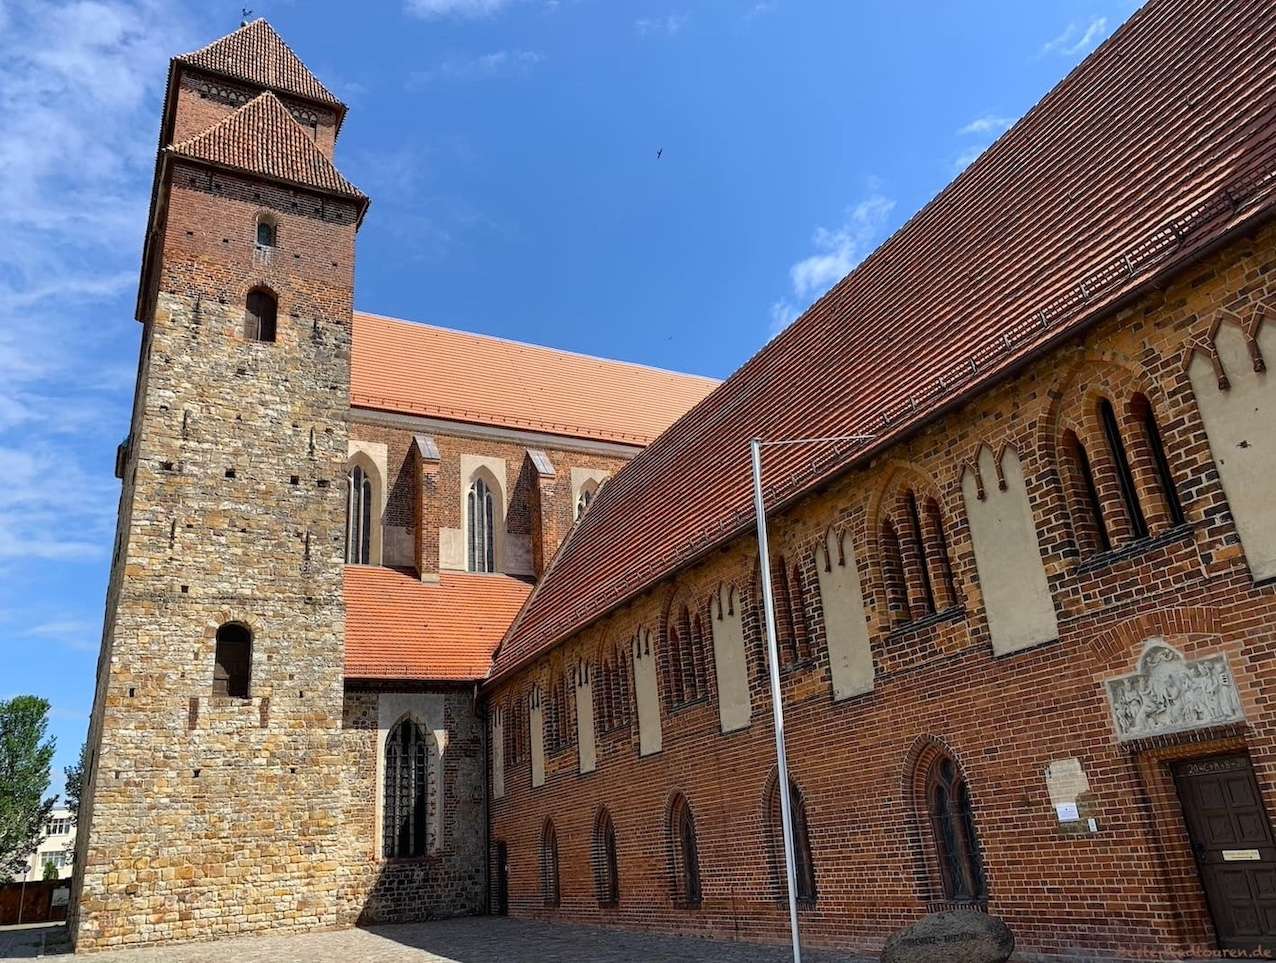 Dom St. Marien zu Havelberg, Kloster